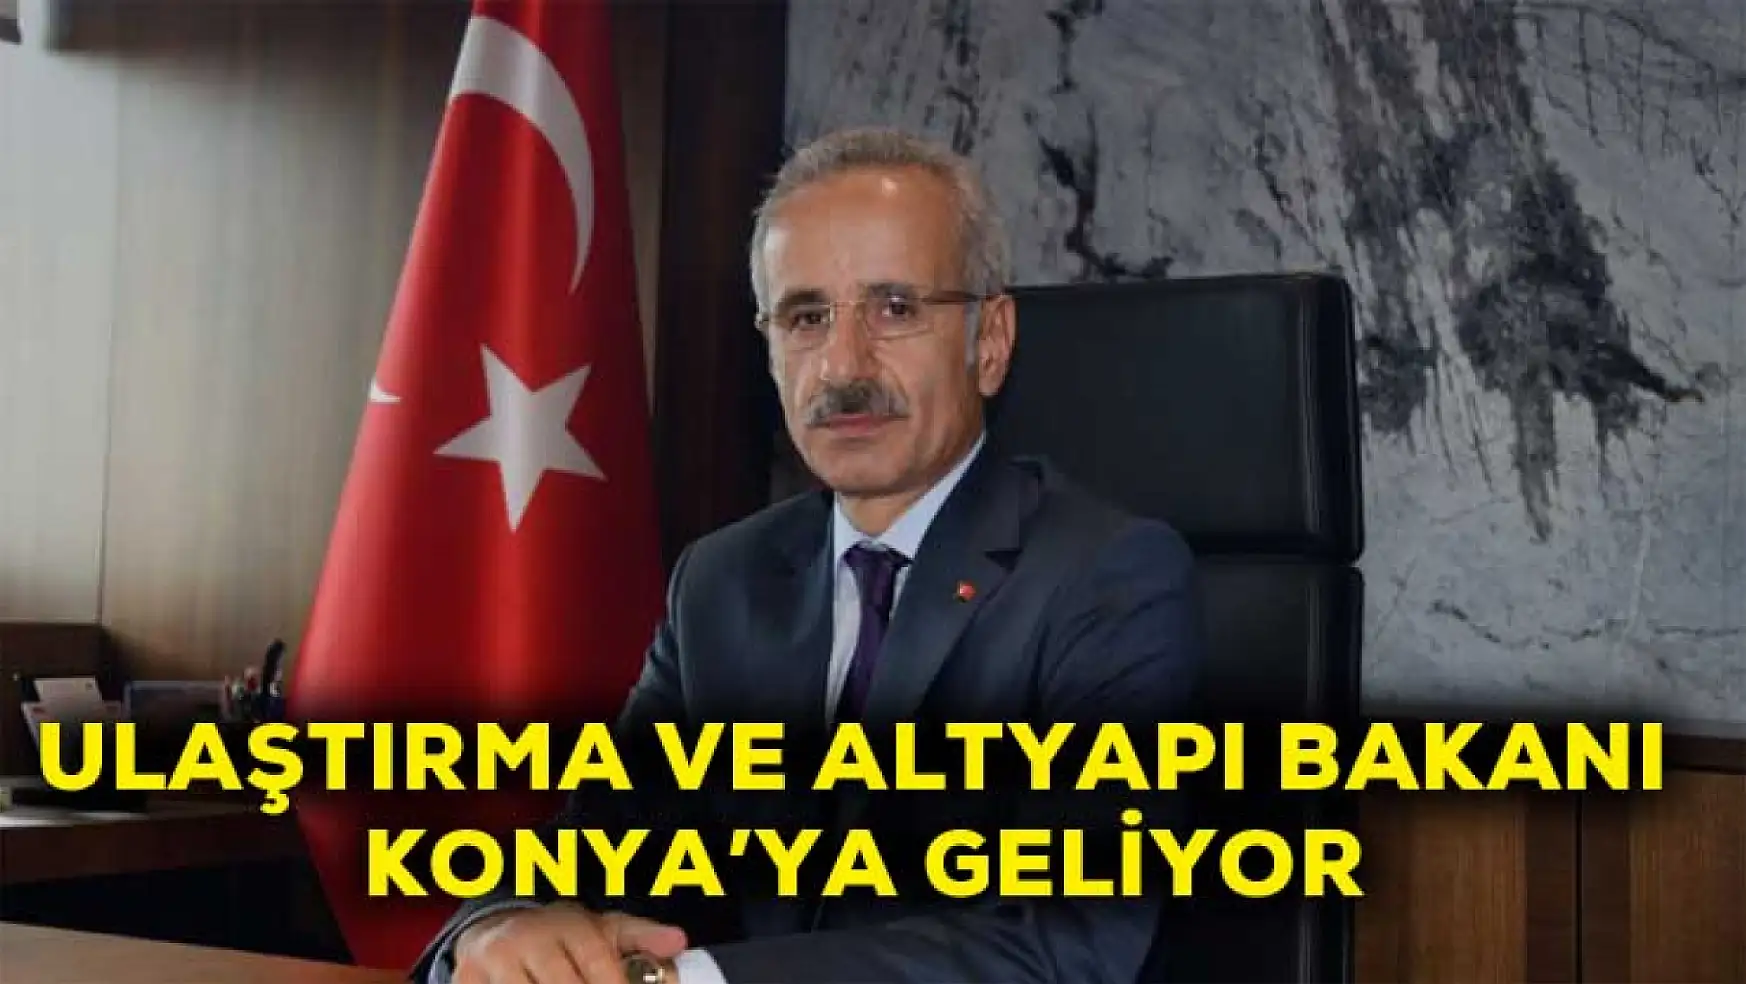 Ulaştırma ve Altyapı Bakanı Konya'ya geliyor